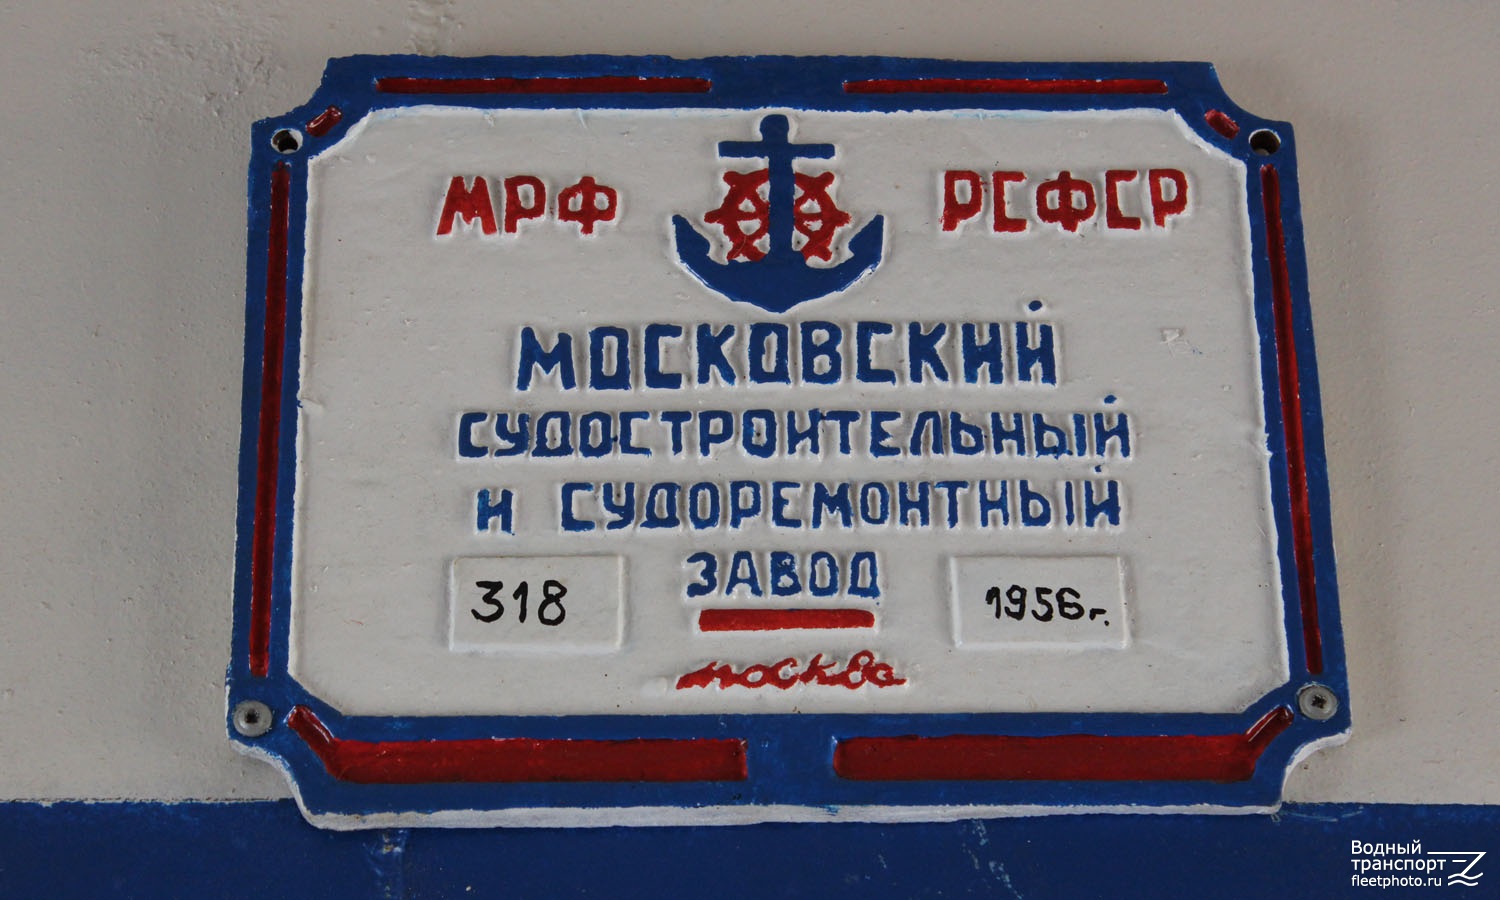 ОМ-318. Shipbuilder's Makers Plates